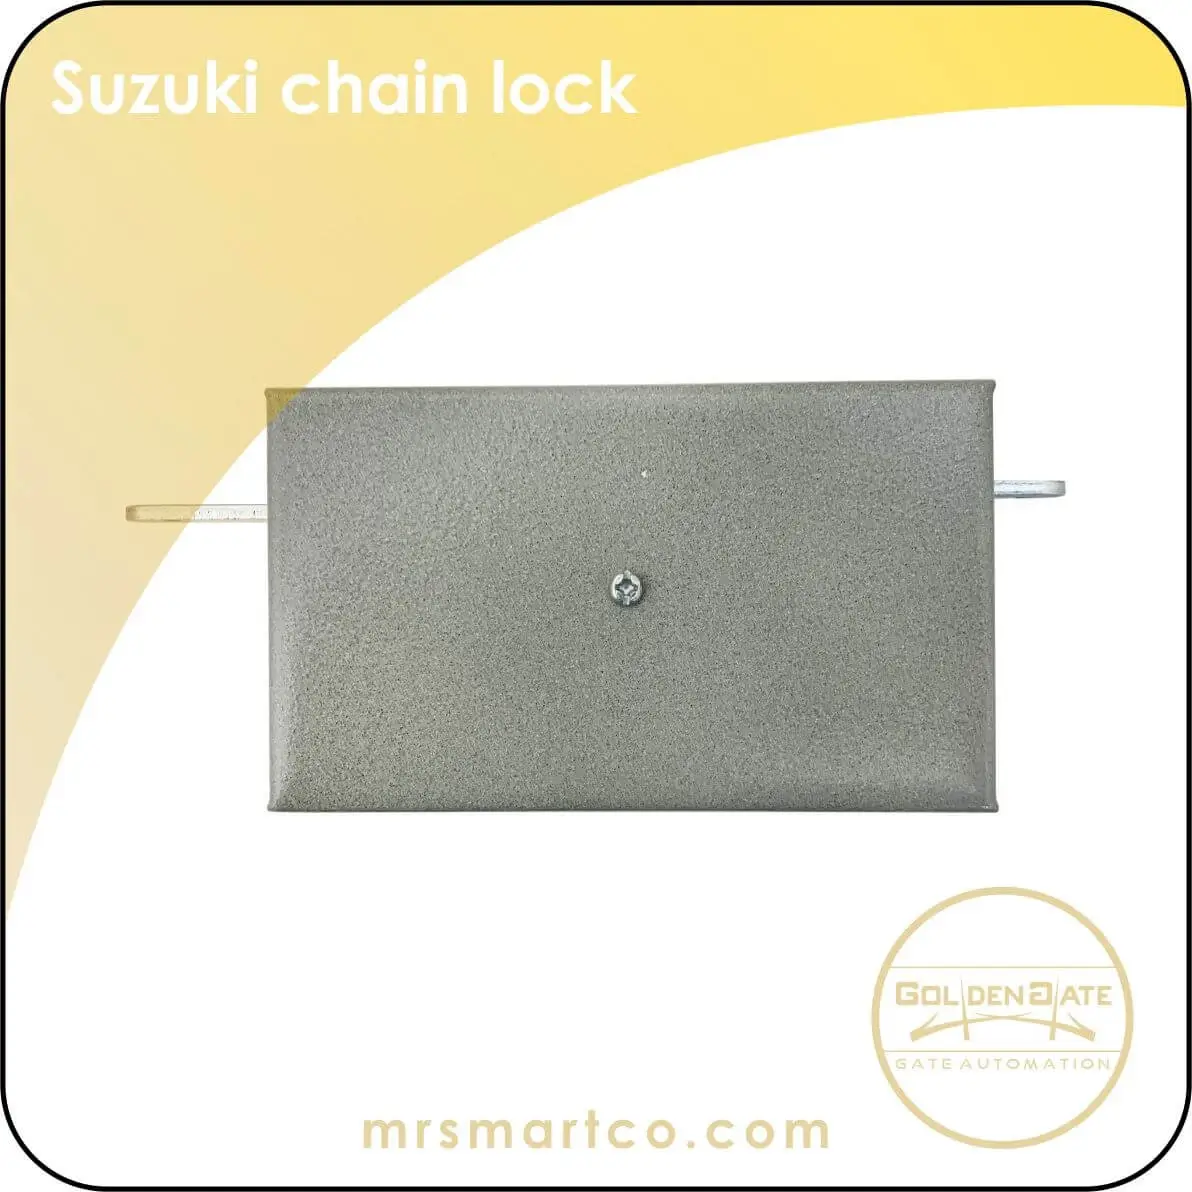 Suzuki chain lock